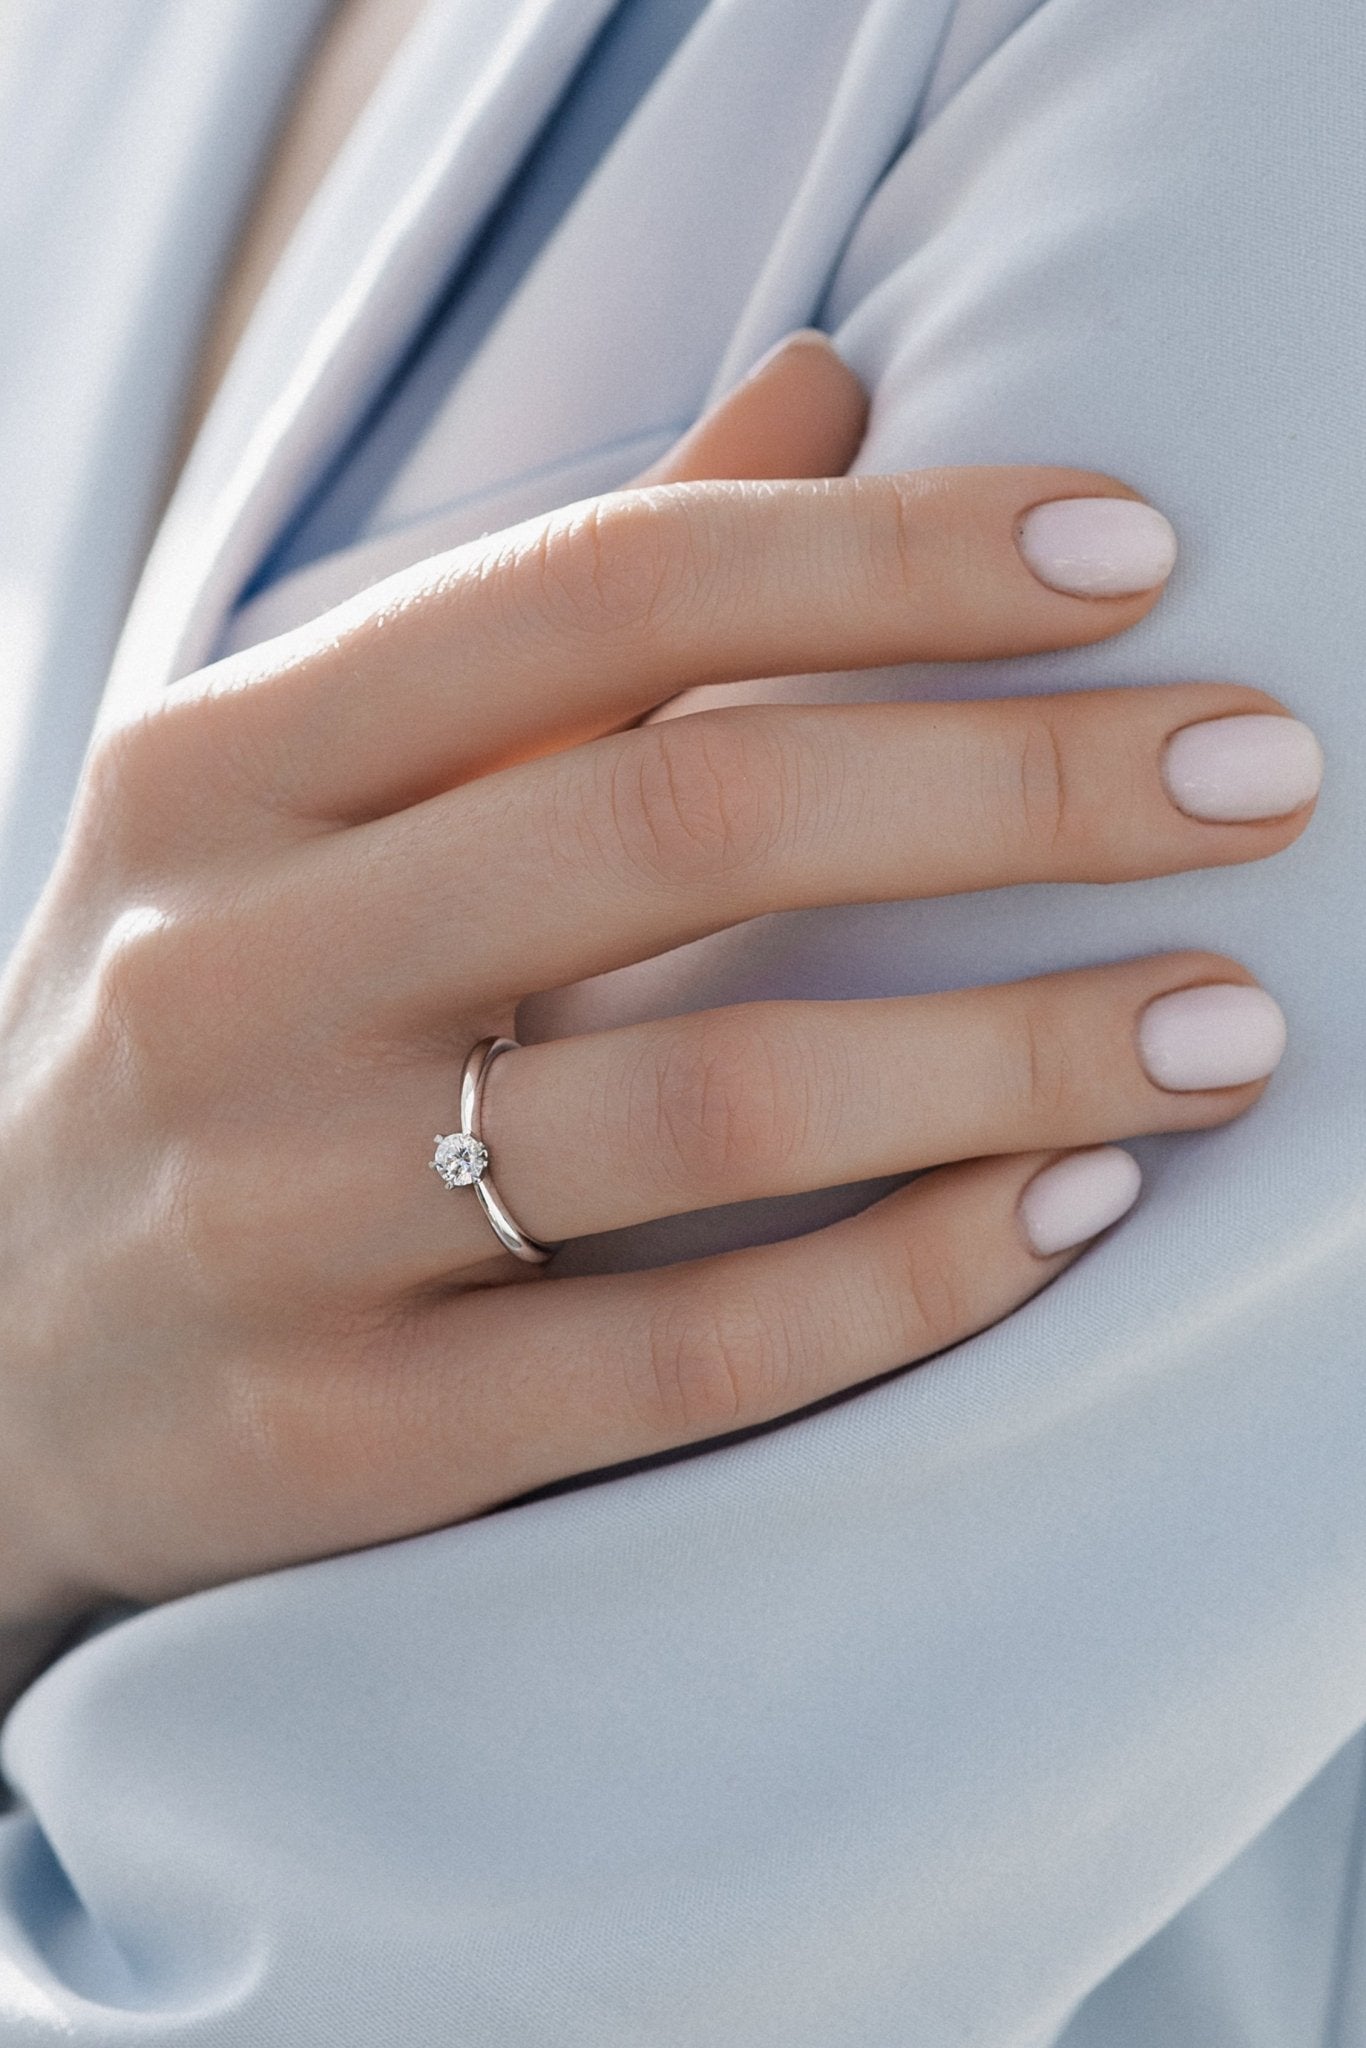 Solitaire diamond engagement ring - escorialjewelry